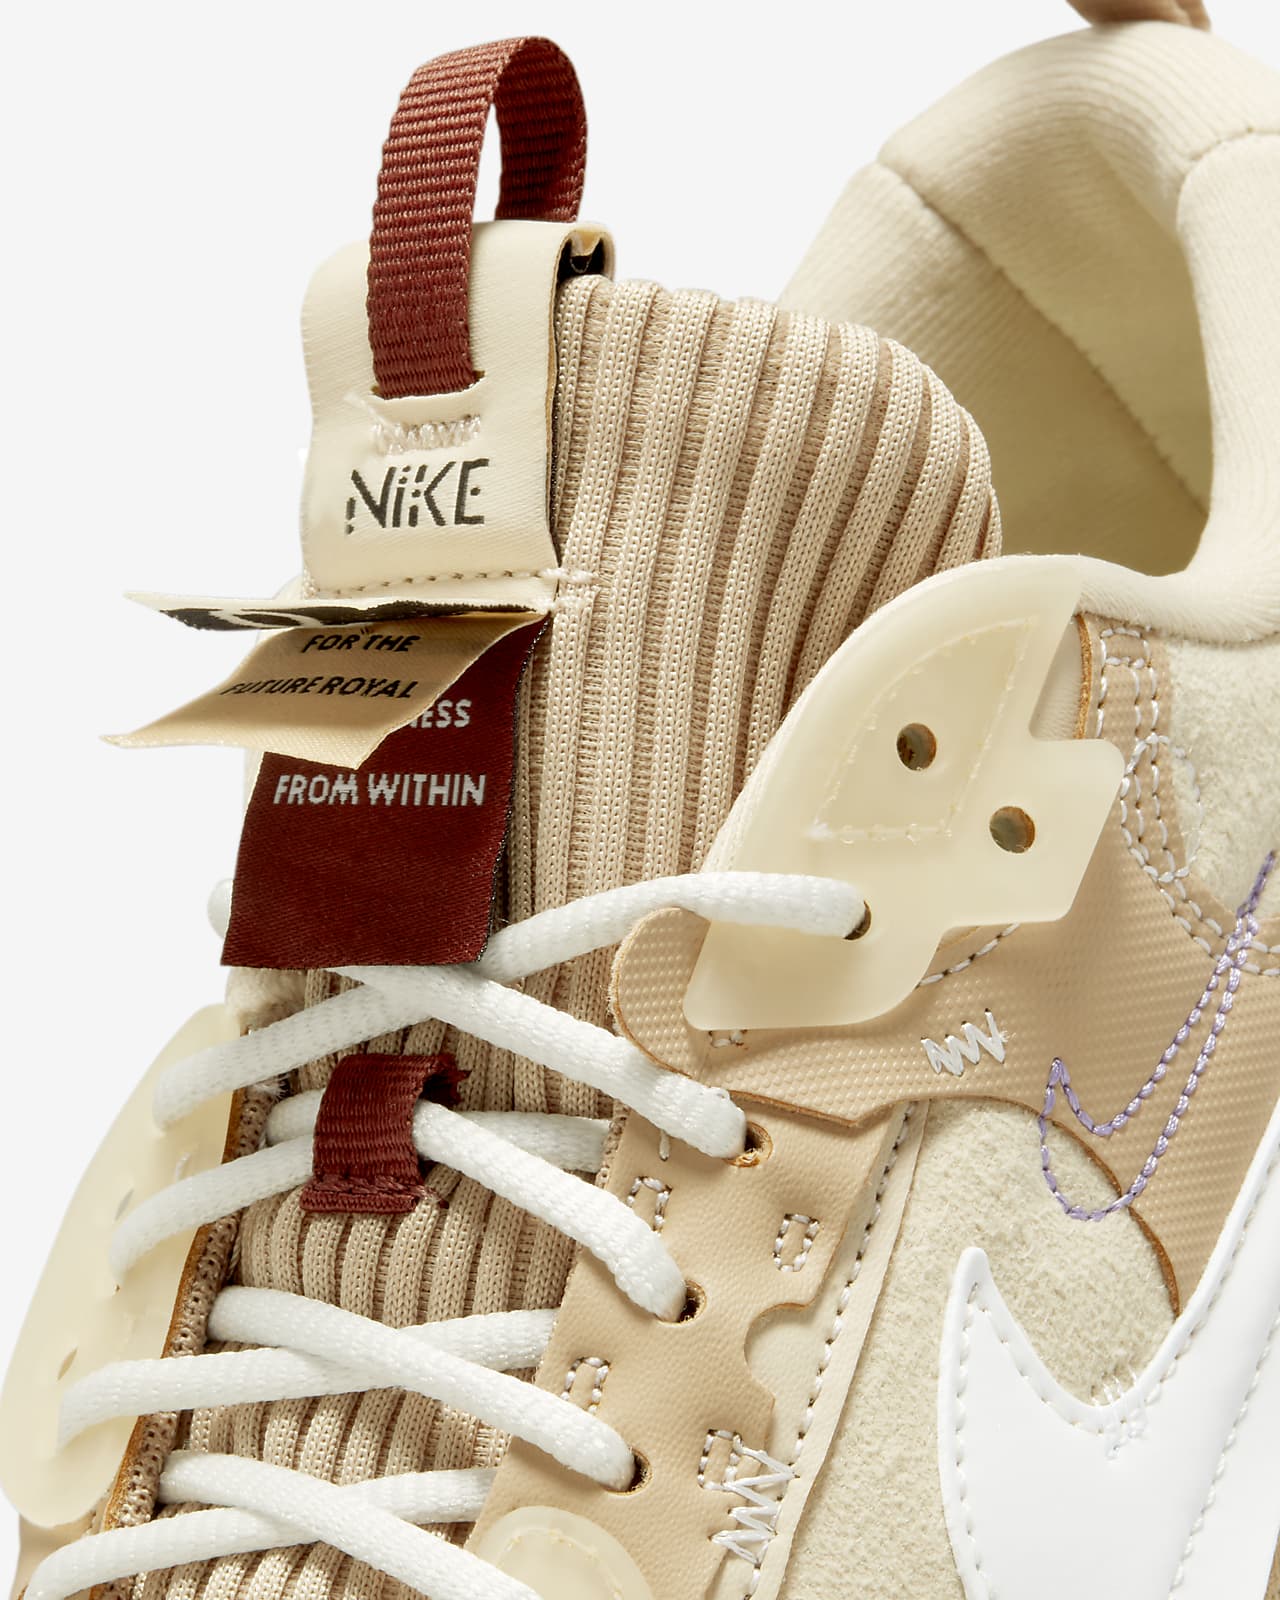 Sudor Manifiesto Desplazamiento Nike Air Max 90 Futura x Serena Williams Design Crew Zapatillas. Nike ES